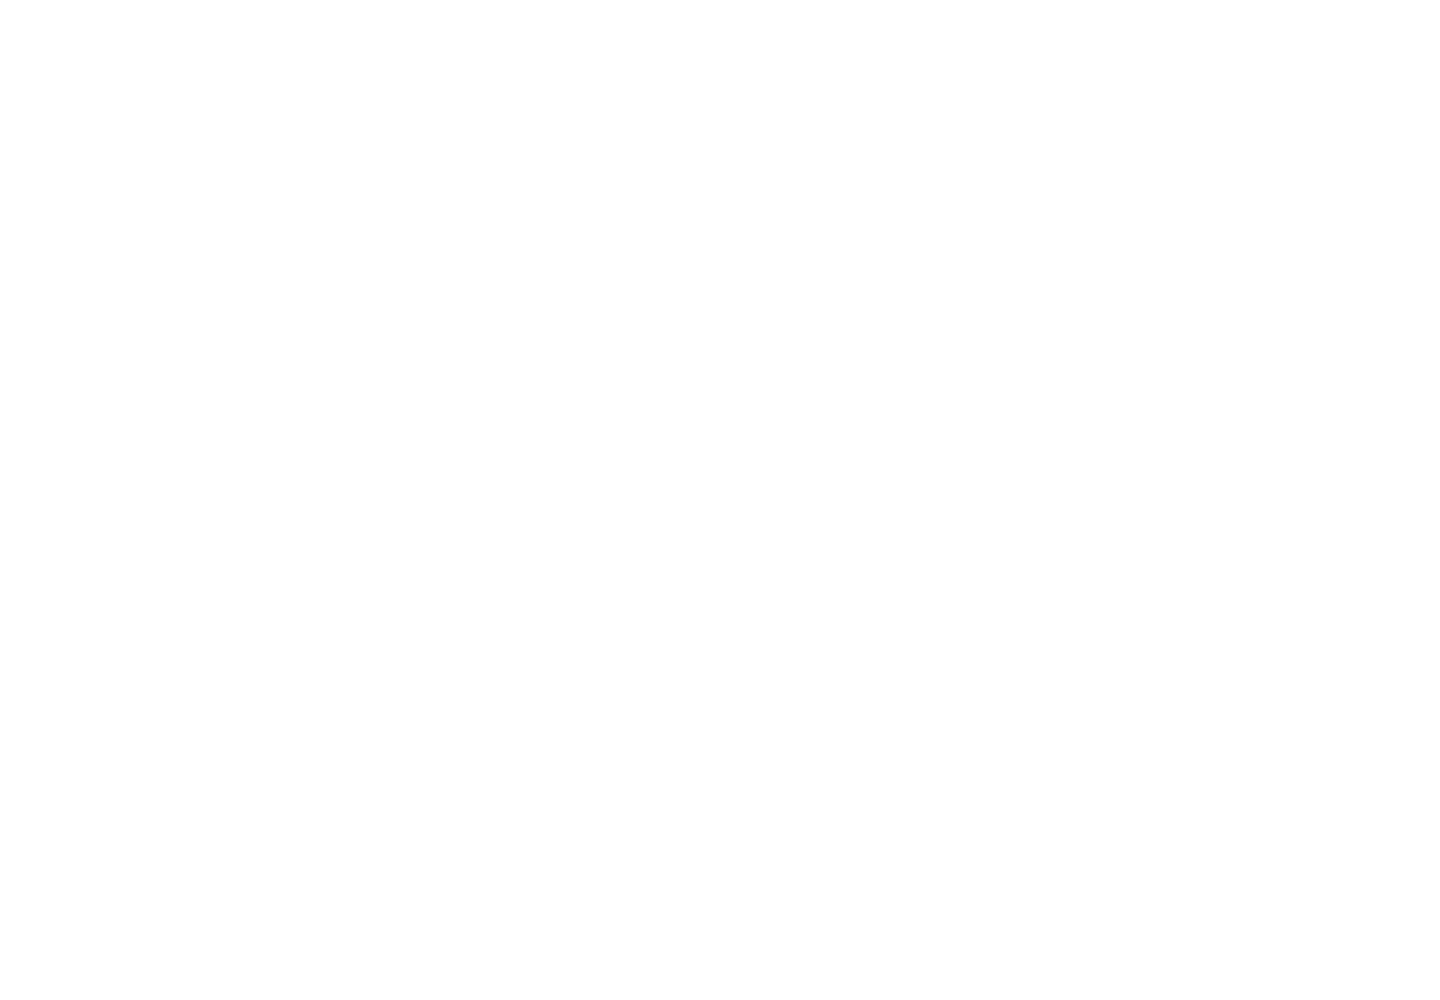 Annexx Restaurant & Bar